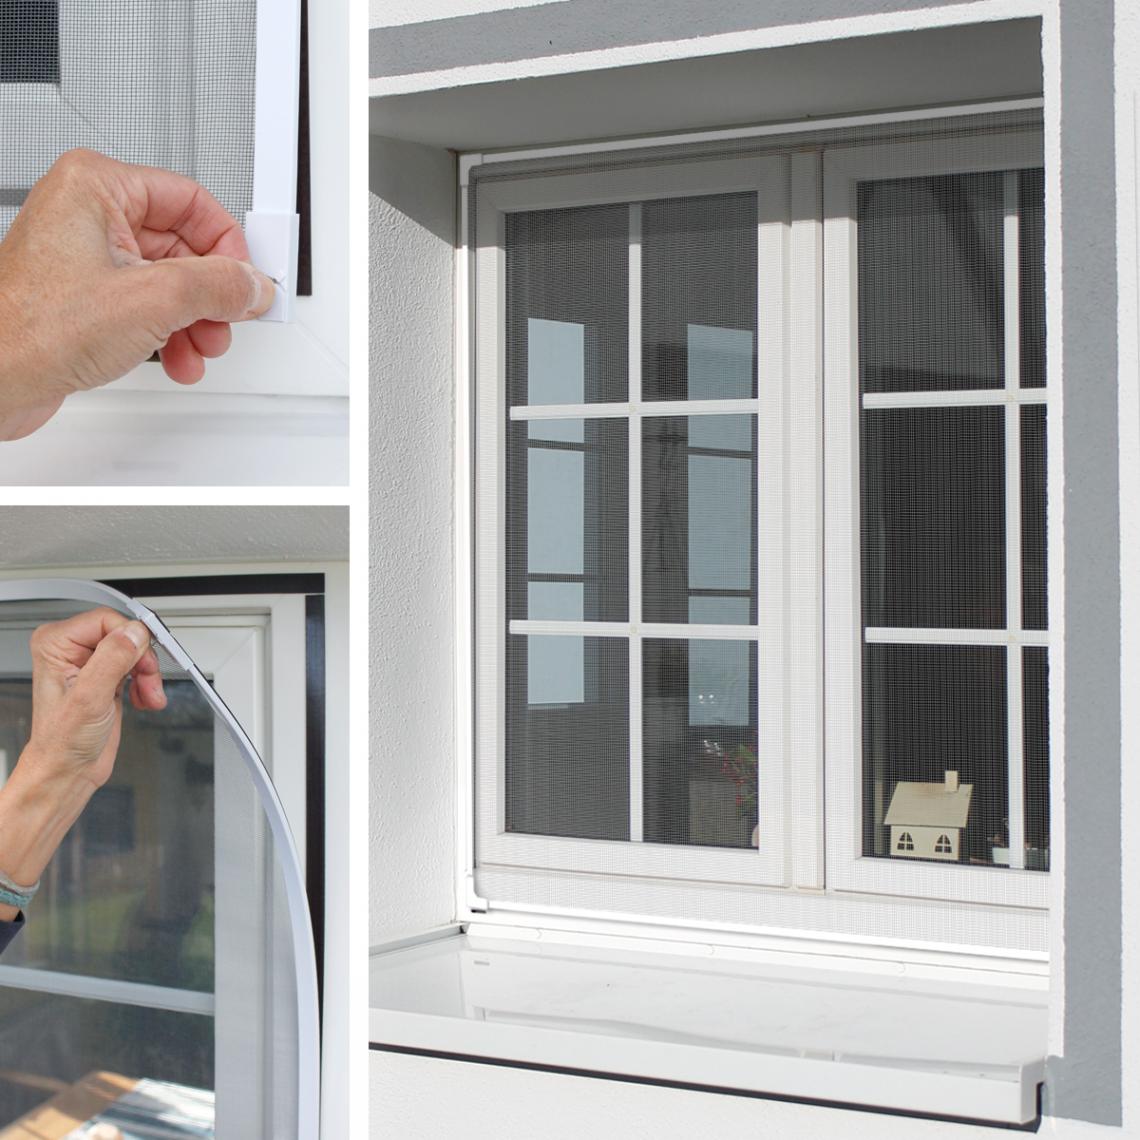 Ecd Germany - Moustiquaire fenêtre cadre magnétique blanc 130x150 protection contre insectes - Moustiquaire Fenêtre